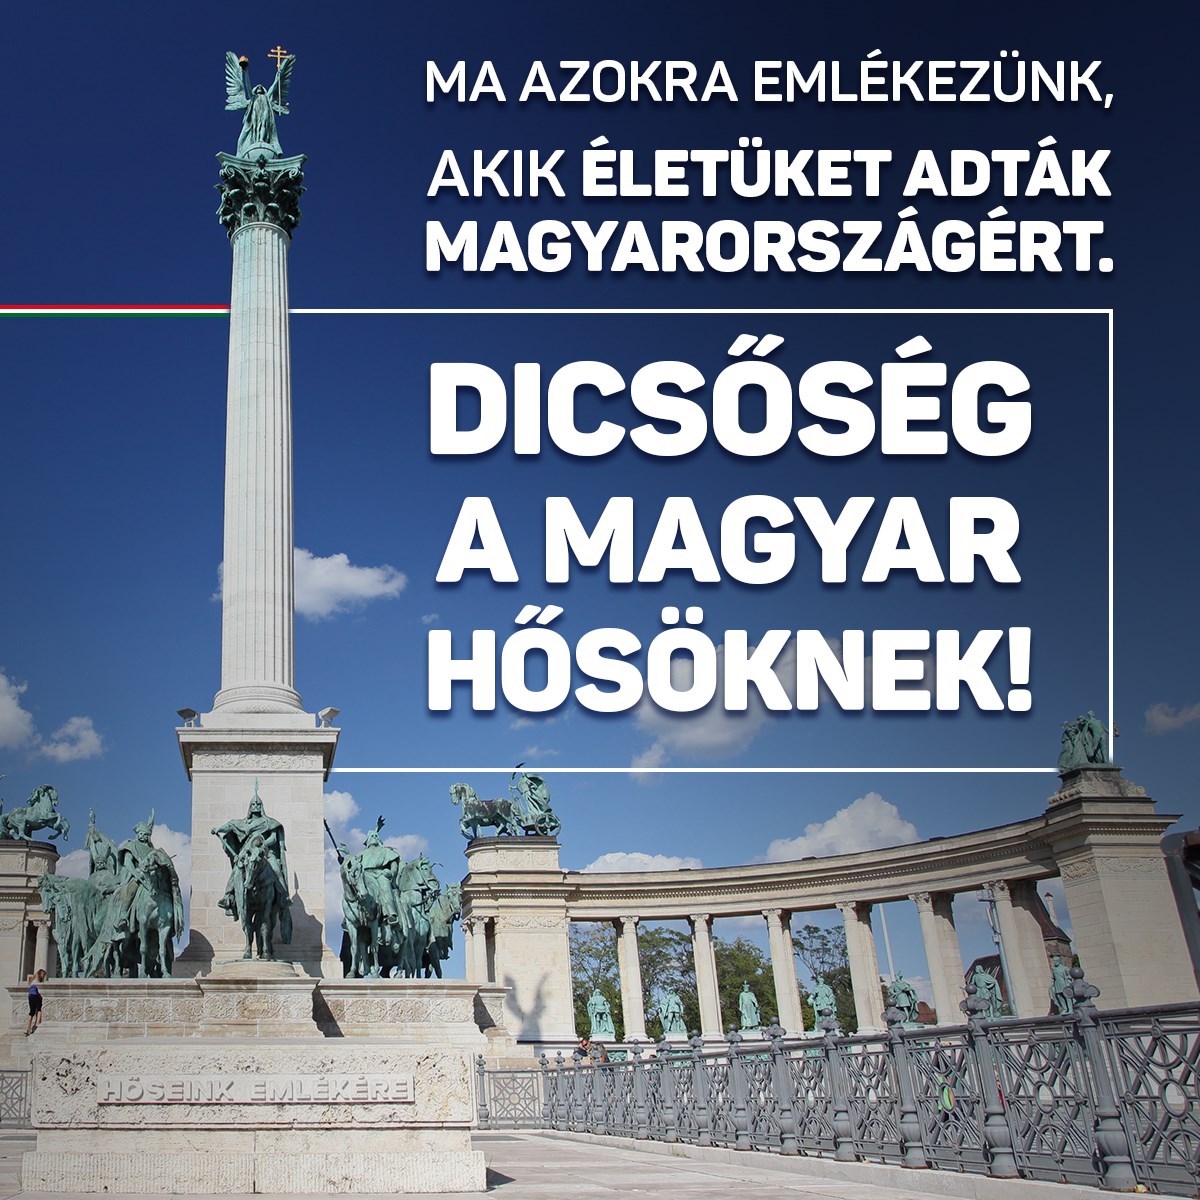 Ma van a Magyar Hősök Napja. Most azokra emlékezünk, akik életüket adták Magyarországért. Dicsőség a magyar hősöknek!